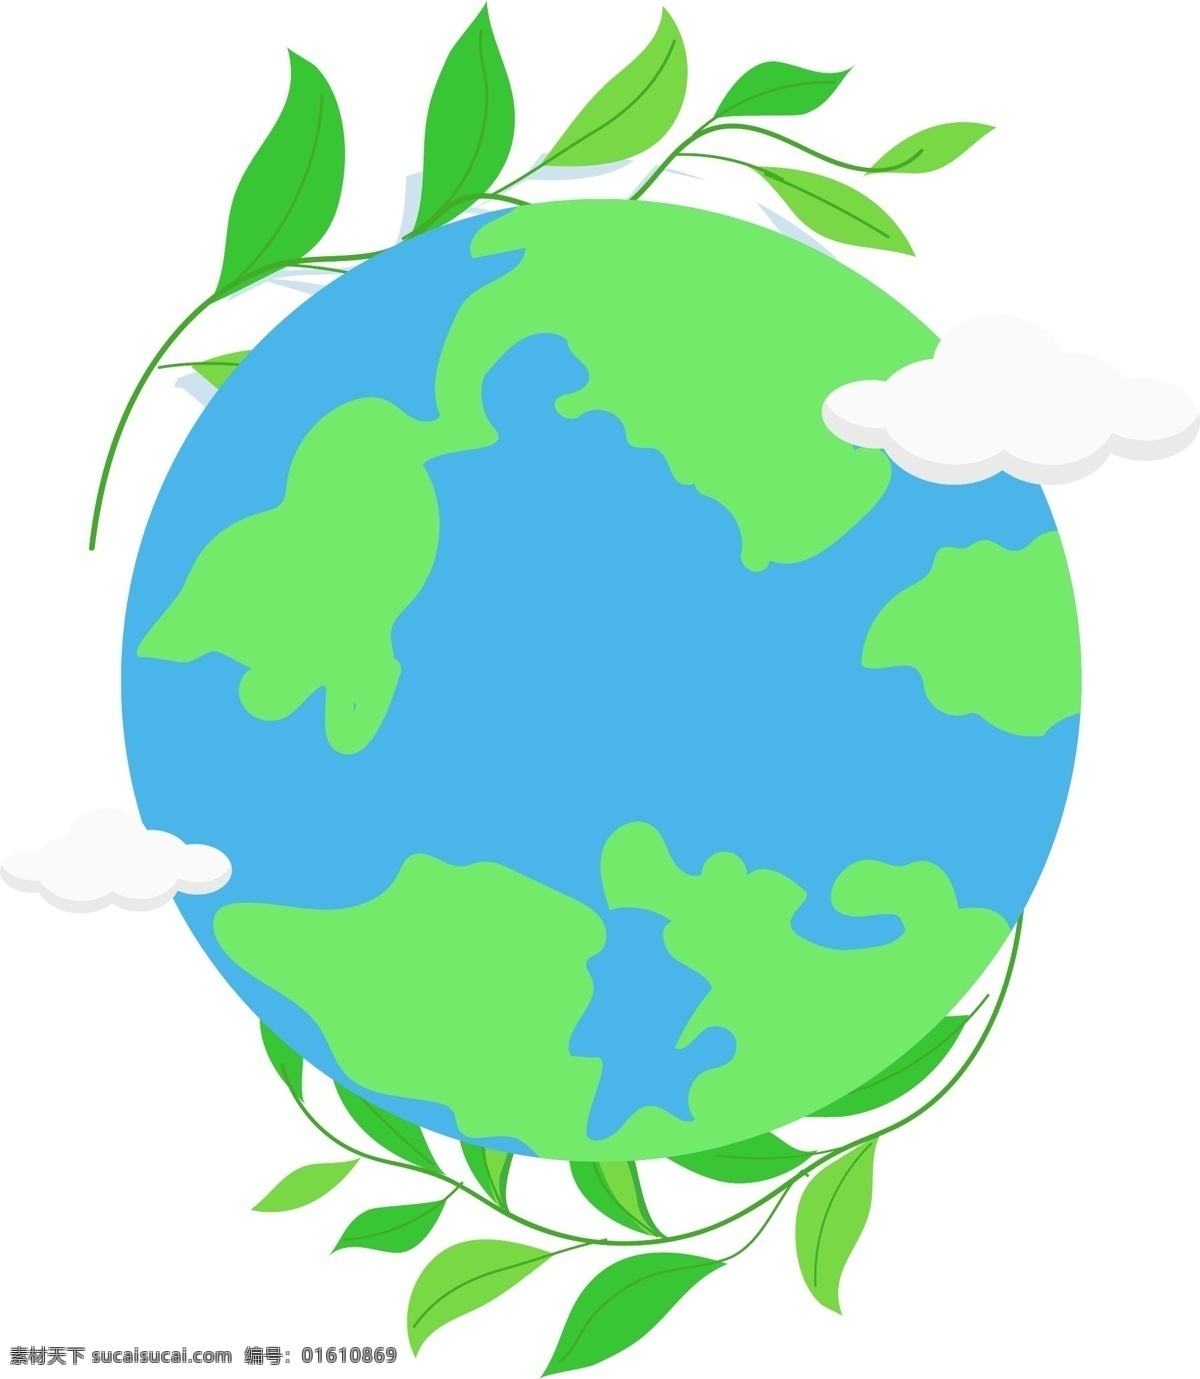 卡通 风格 世界 地球日 元素 绿色 蓝色 环保 科学 再生能源 绿叶 维护 护理 爱护 国家 宇宙 生命 周期 节日 联合国